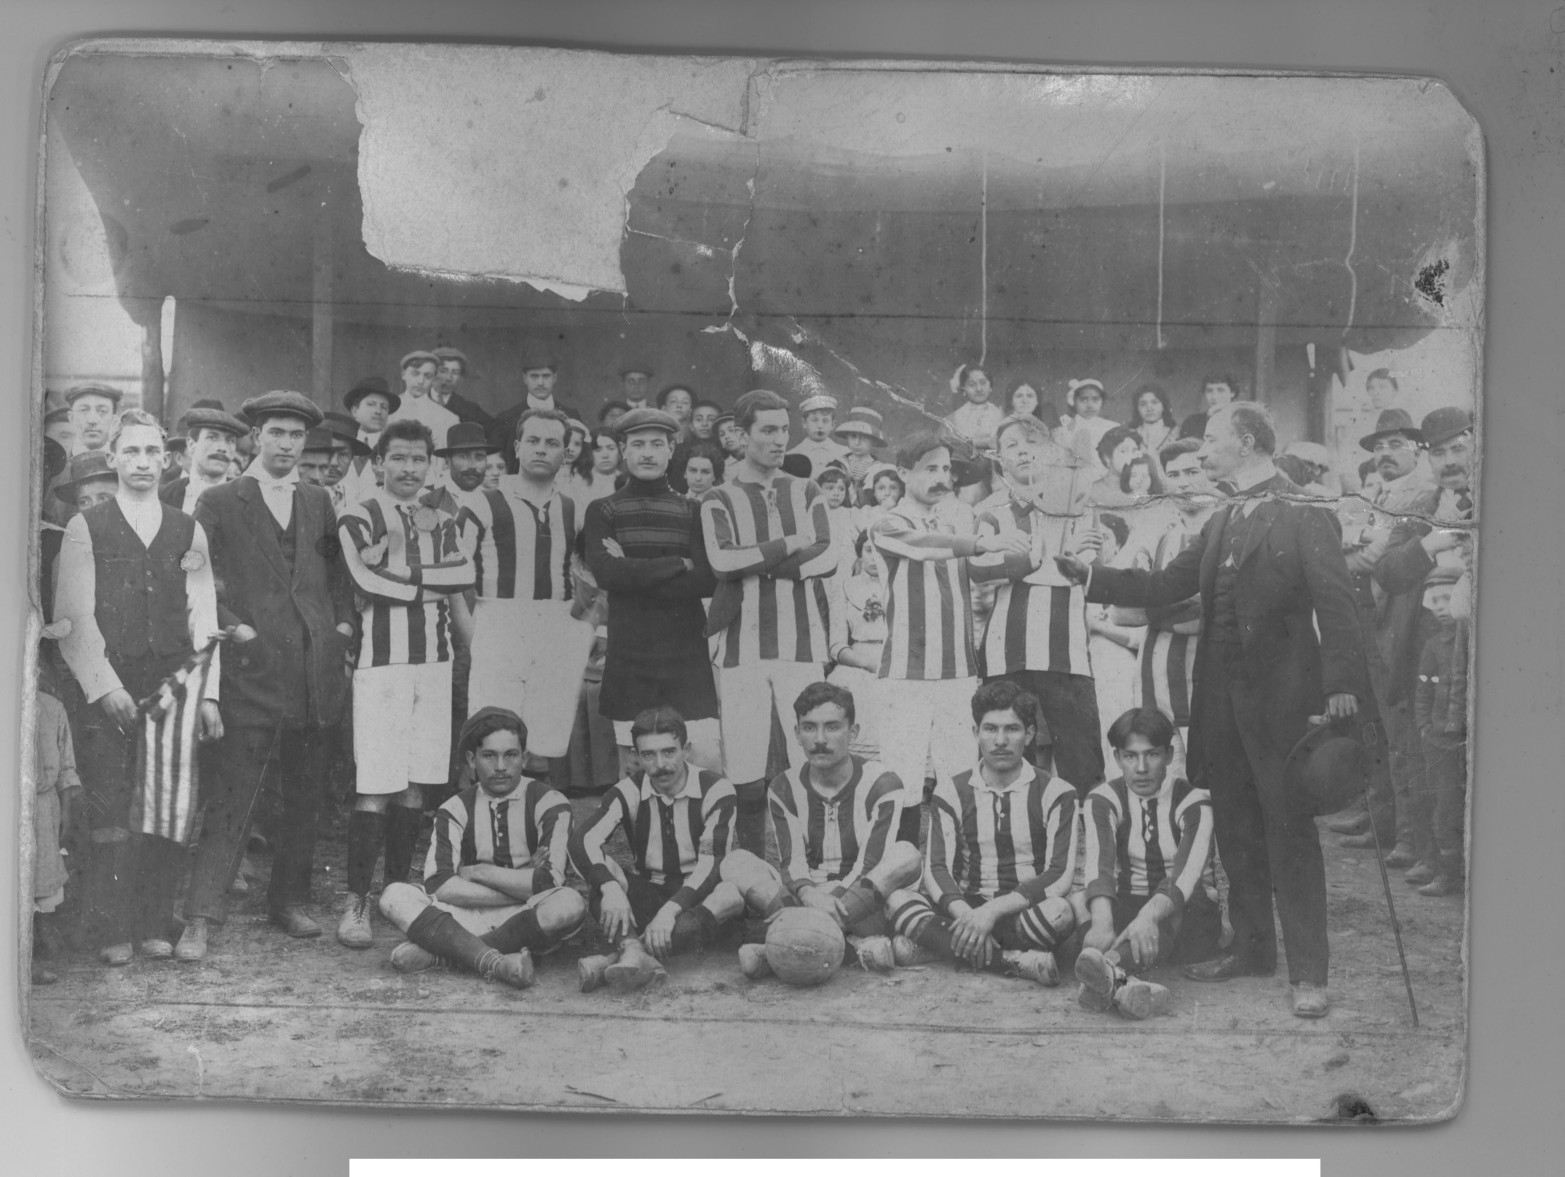 Una de las primeras fotos del equipo de fútbol de Unión.